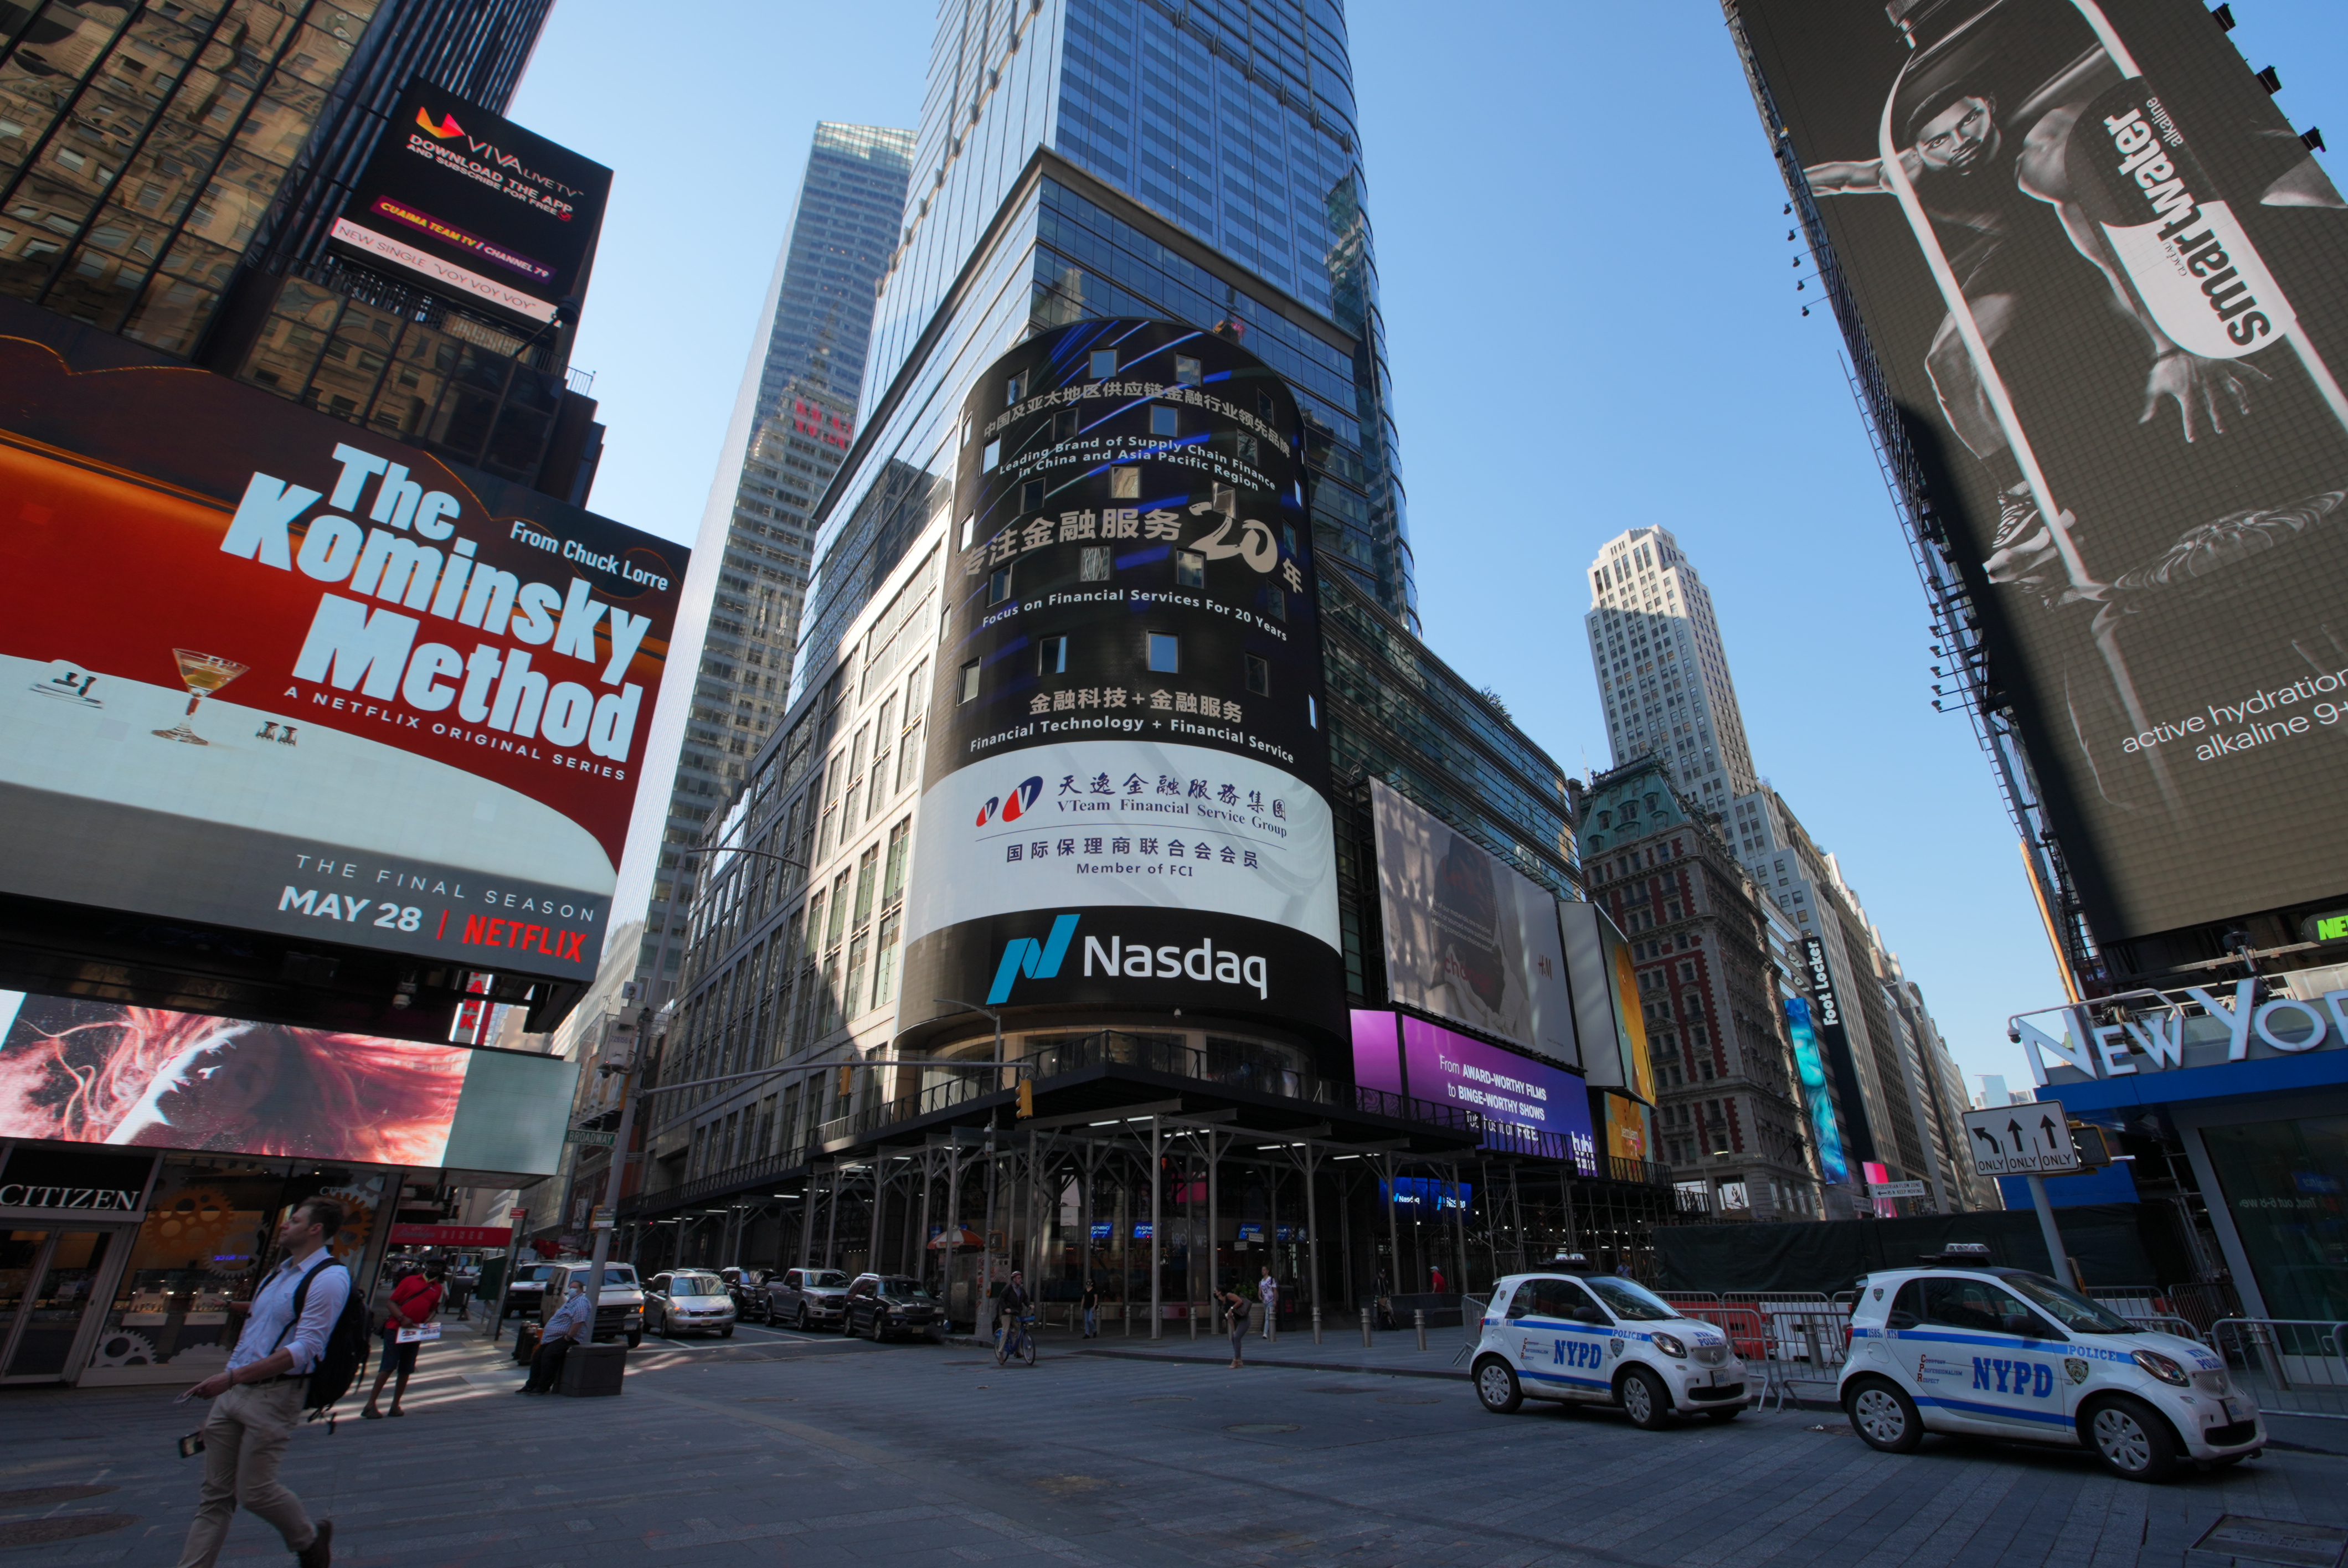 天逸集团强势登陆纽约时代广场大屏幕 前途发光发热